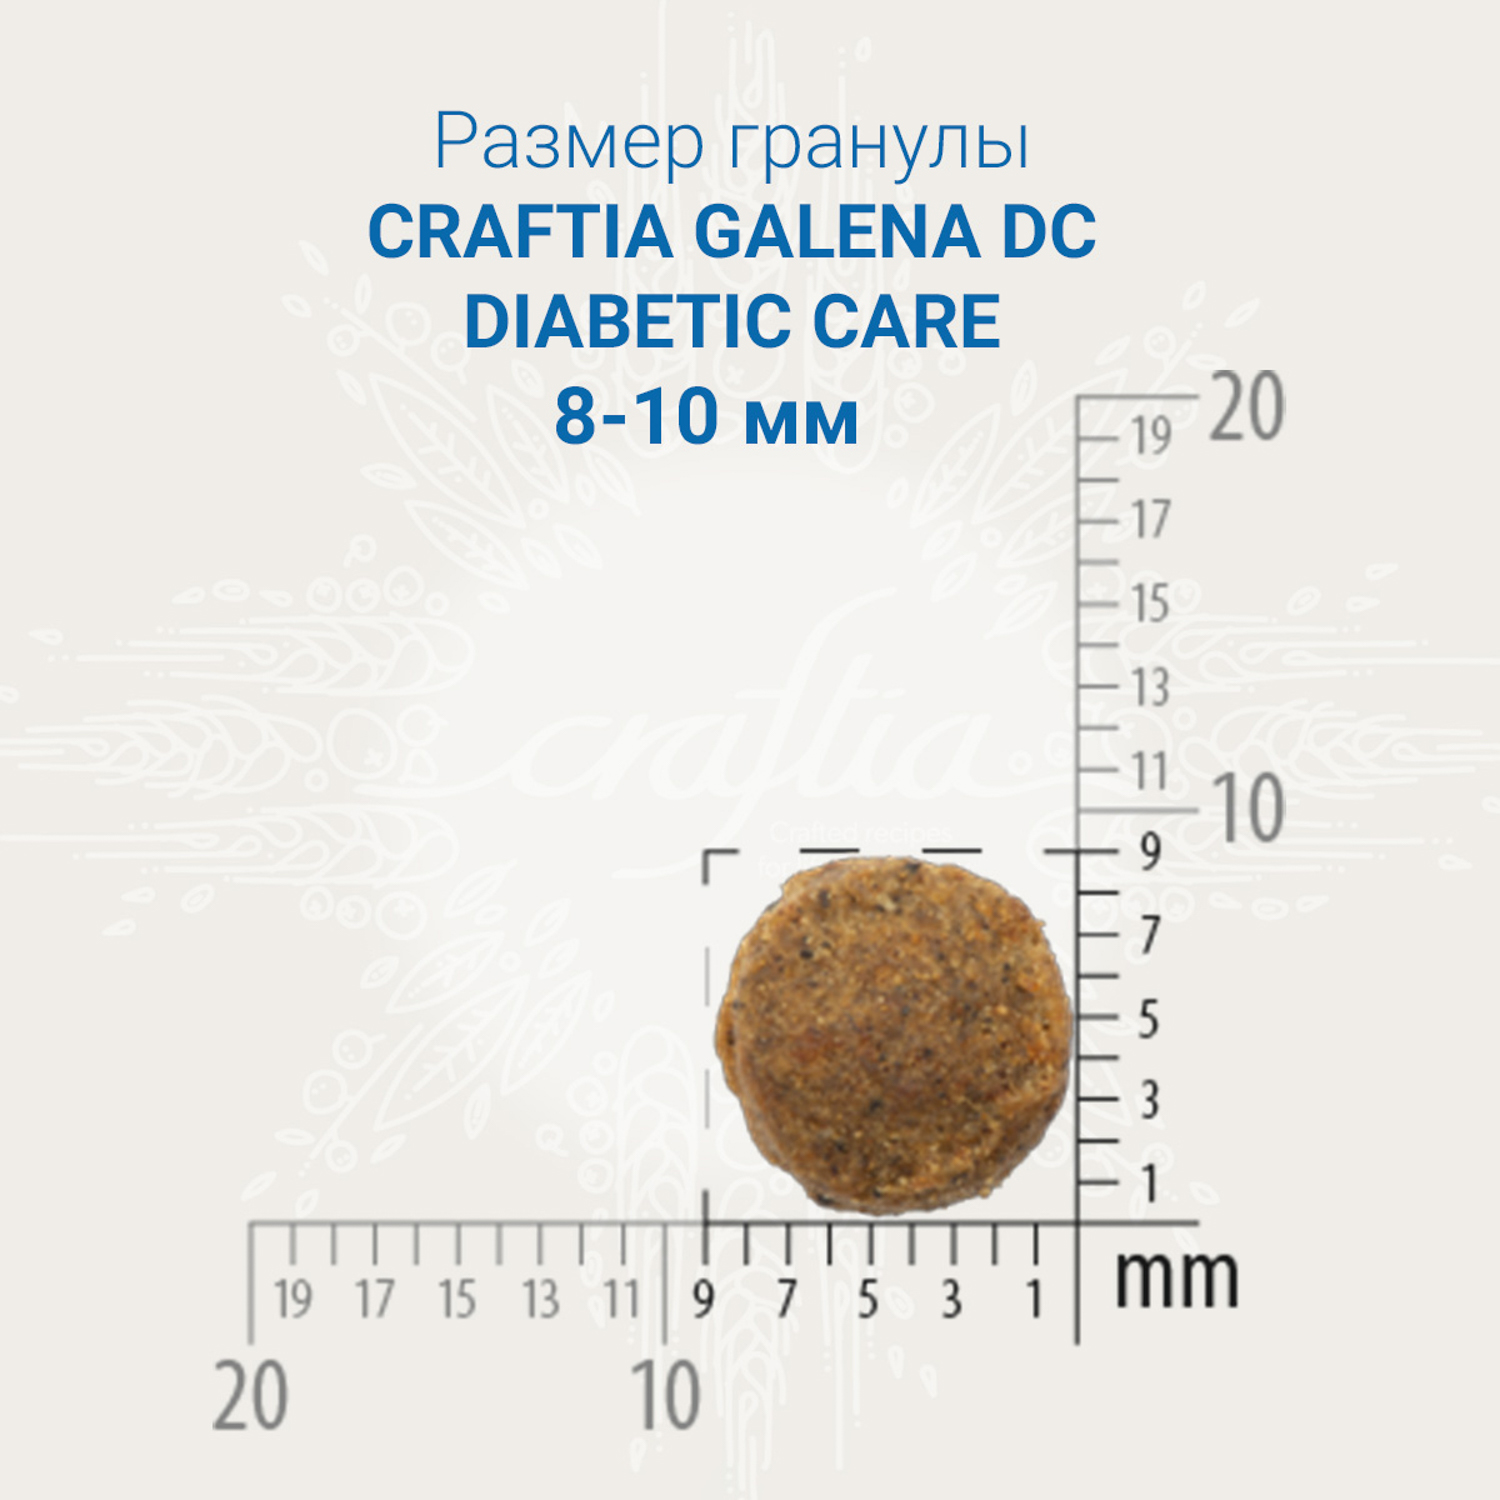 Ветеринарная диета CRAFTIA GALENA CAT DIABETIC CARE Диабетик для кошек при сахарном диабете  4,5 кг